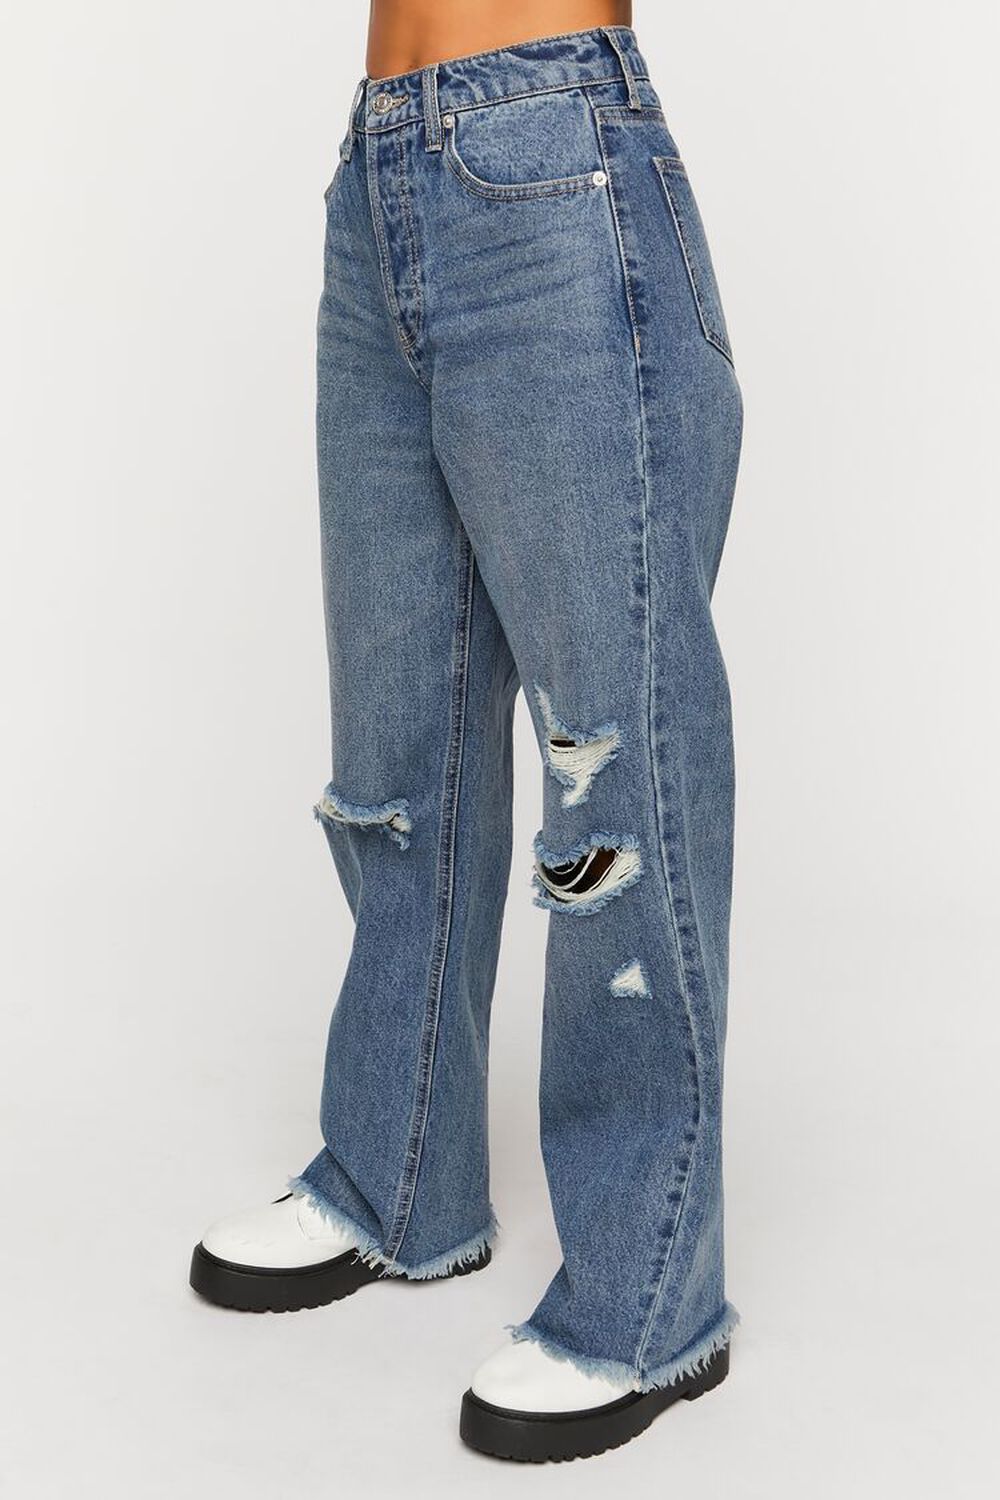 MEDIUM DENIM Distressed 90s-Fit Jeans, image 2